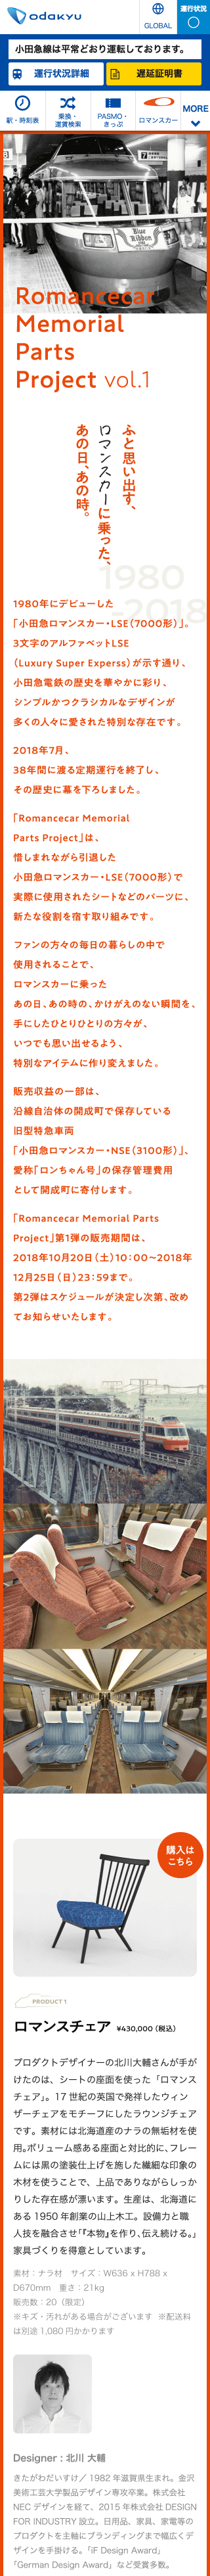 Romancecar Memorial Parts Project